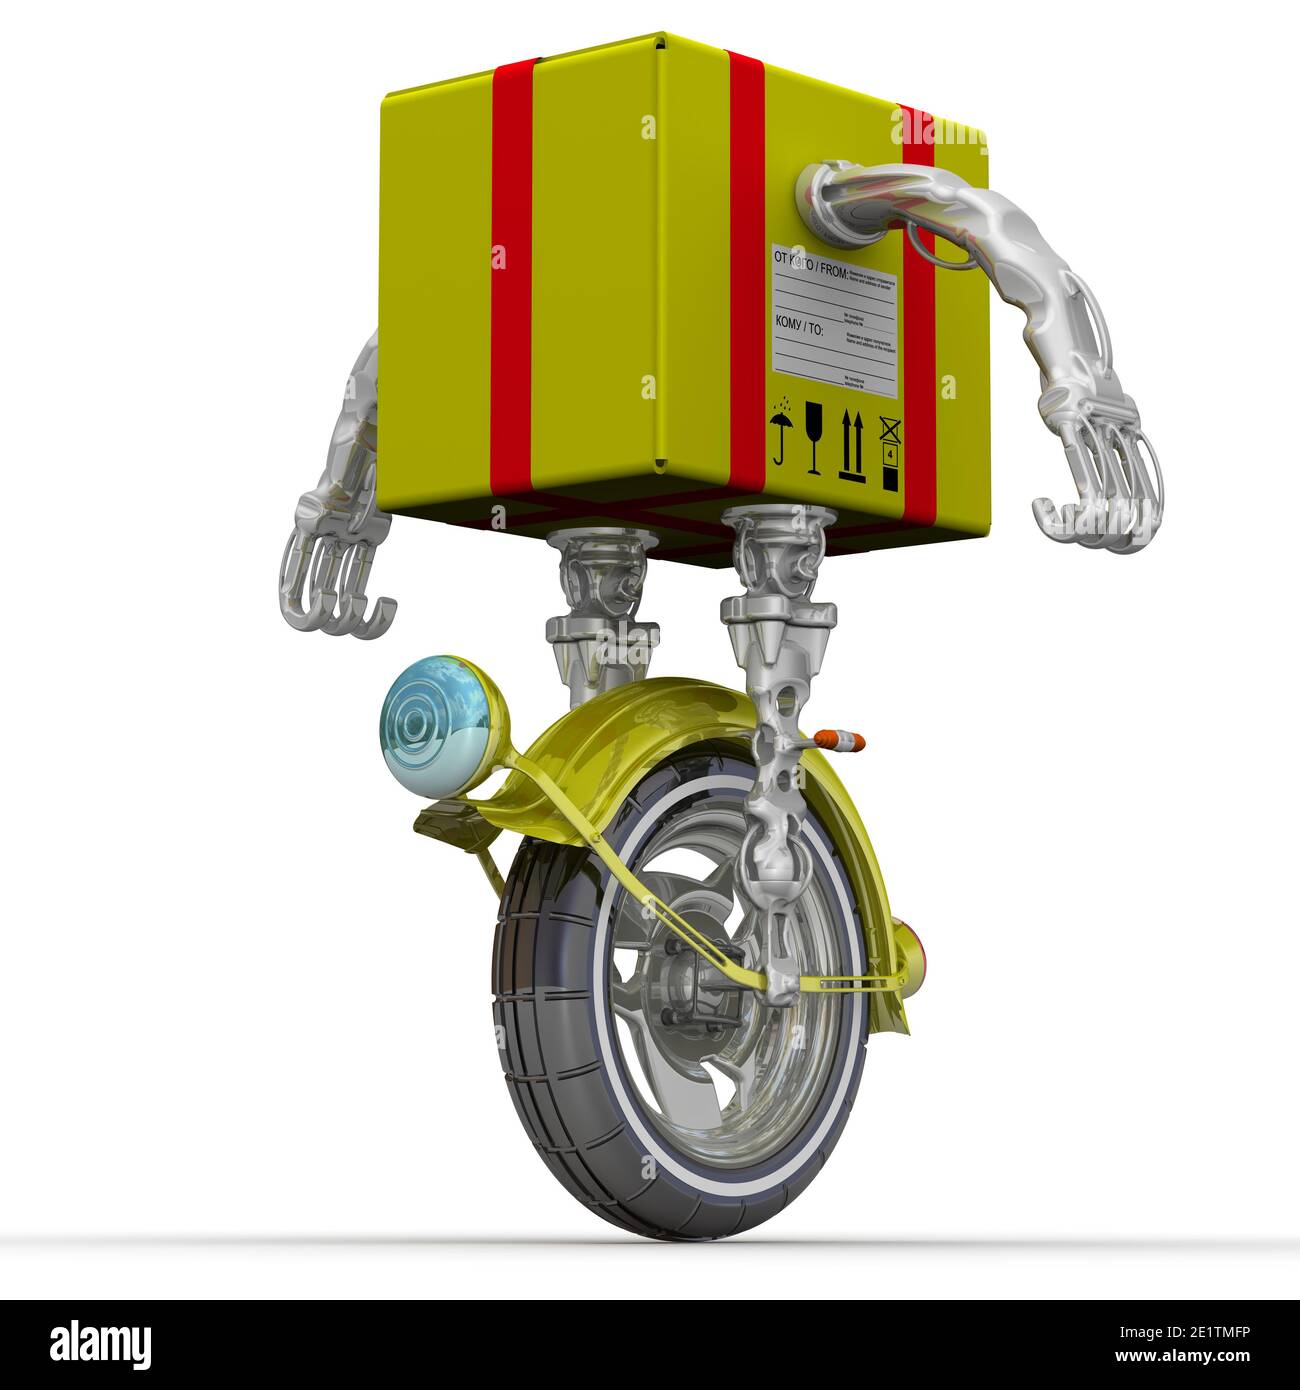 Livraison rapide. Emballage en tant que robot sur le talon de la chaussure.  Colis jaune comme robot sur la monoroue, debout sur une surface blanche.  Illustration 3D Photo Stock - Alamy